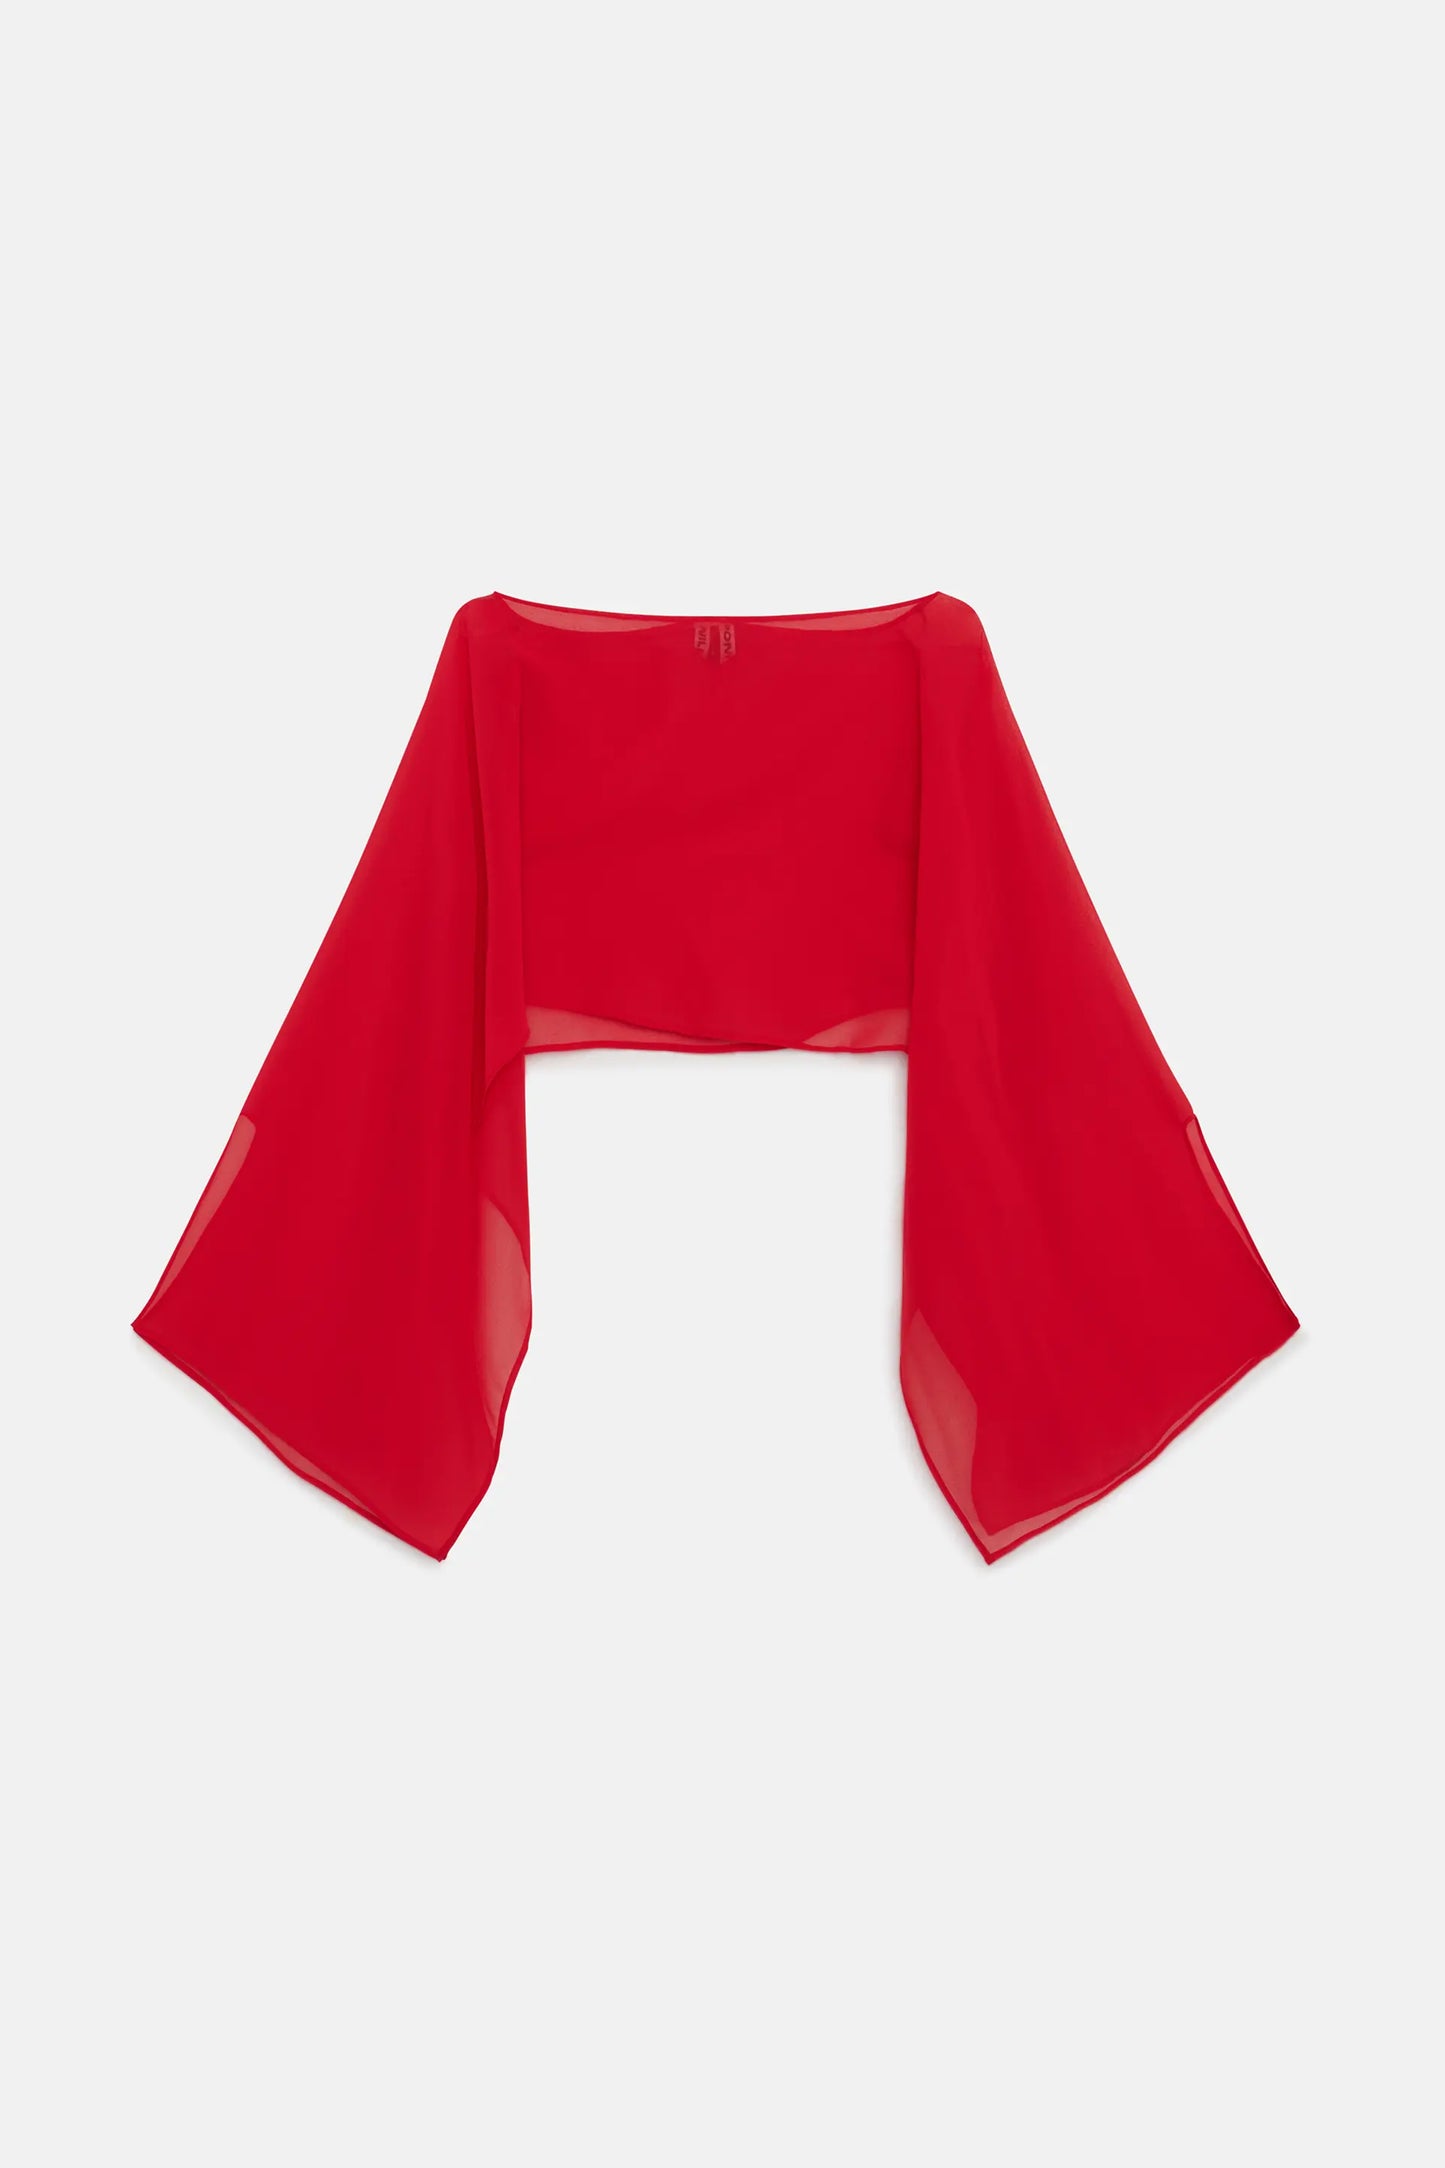 Red chiffon multi-position cape